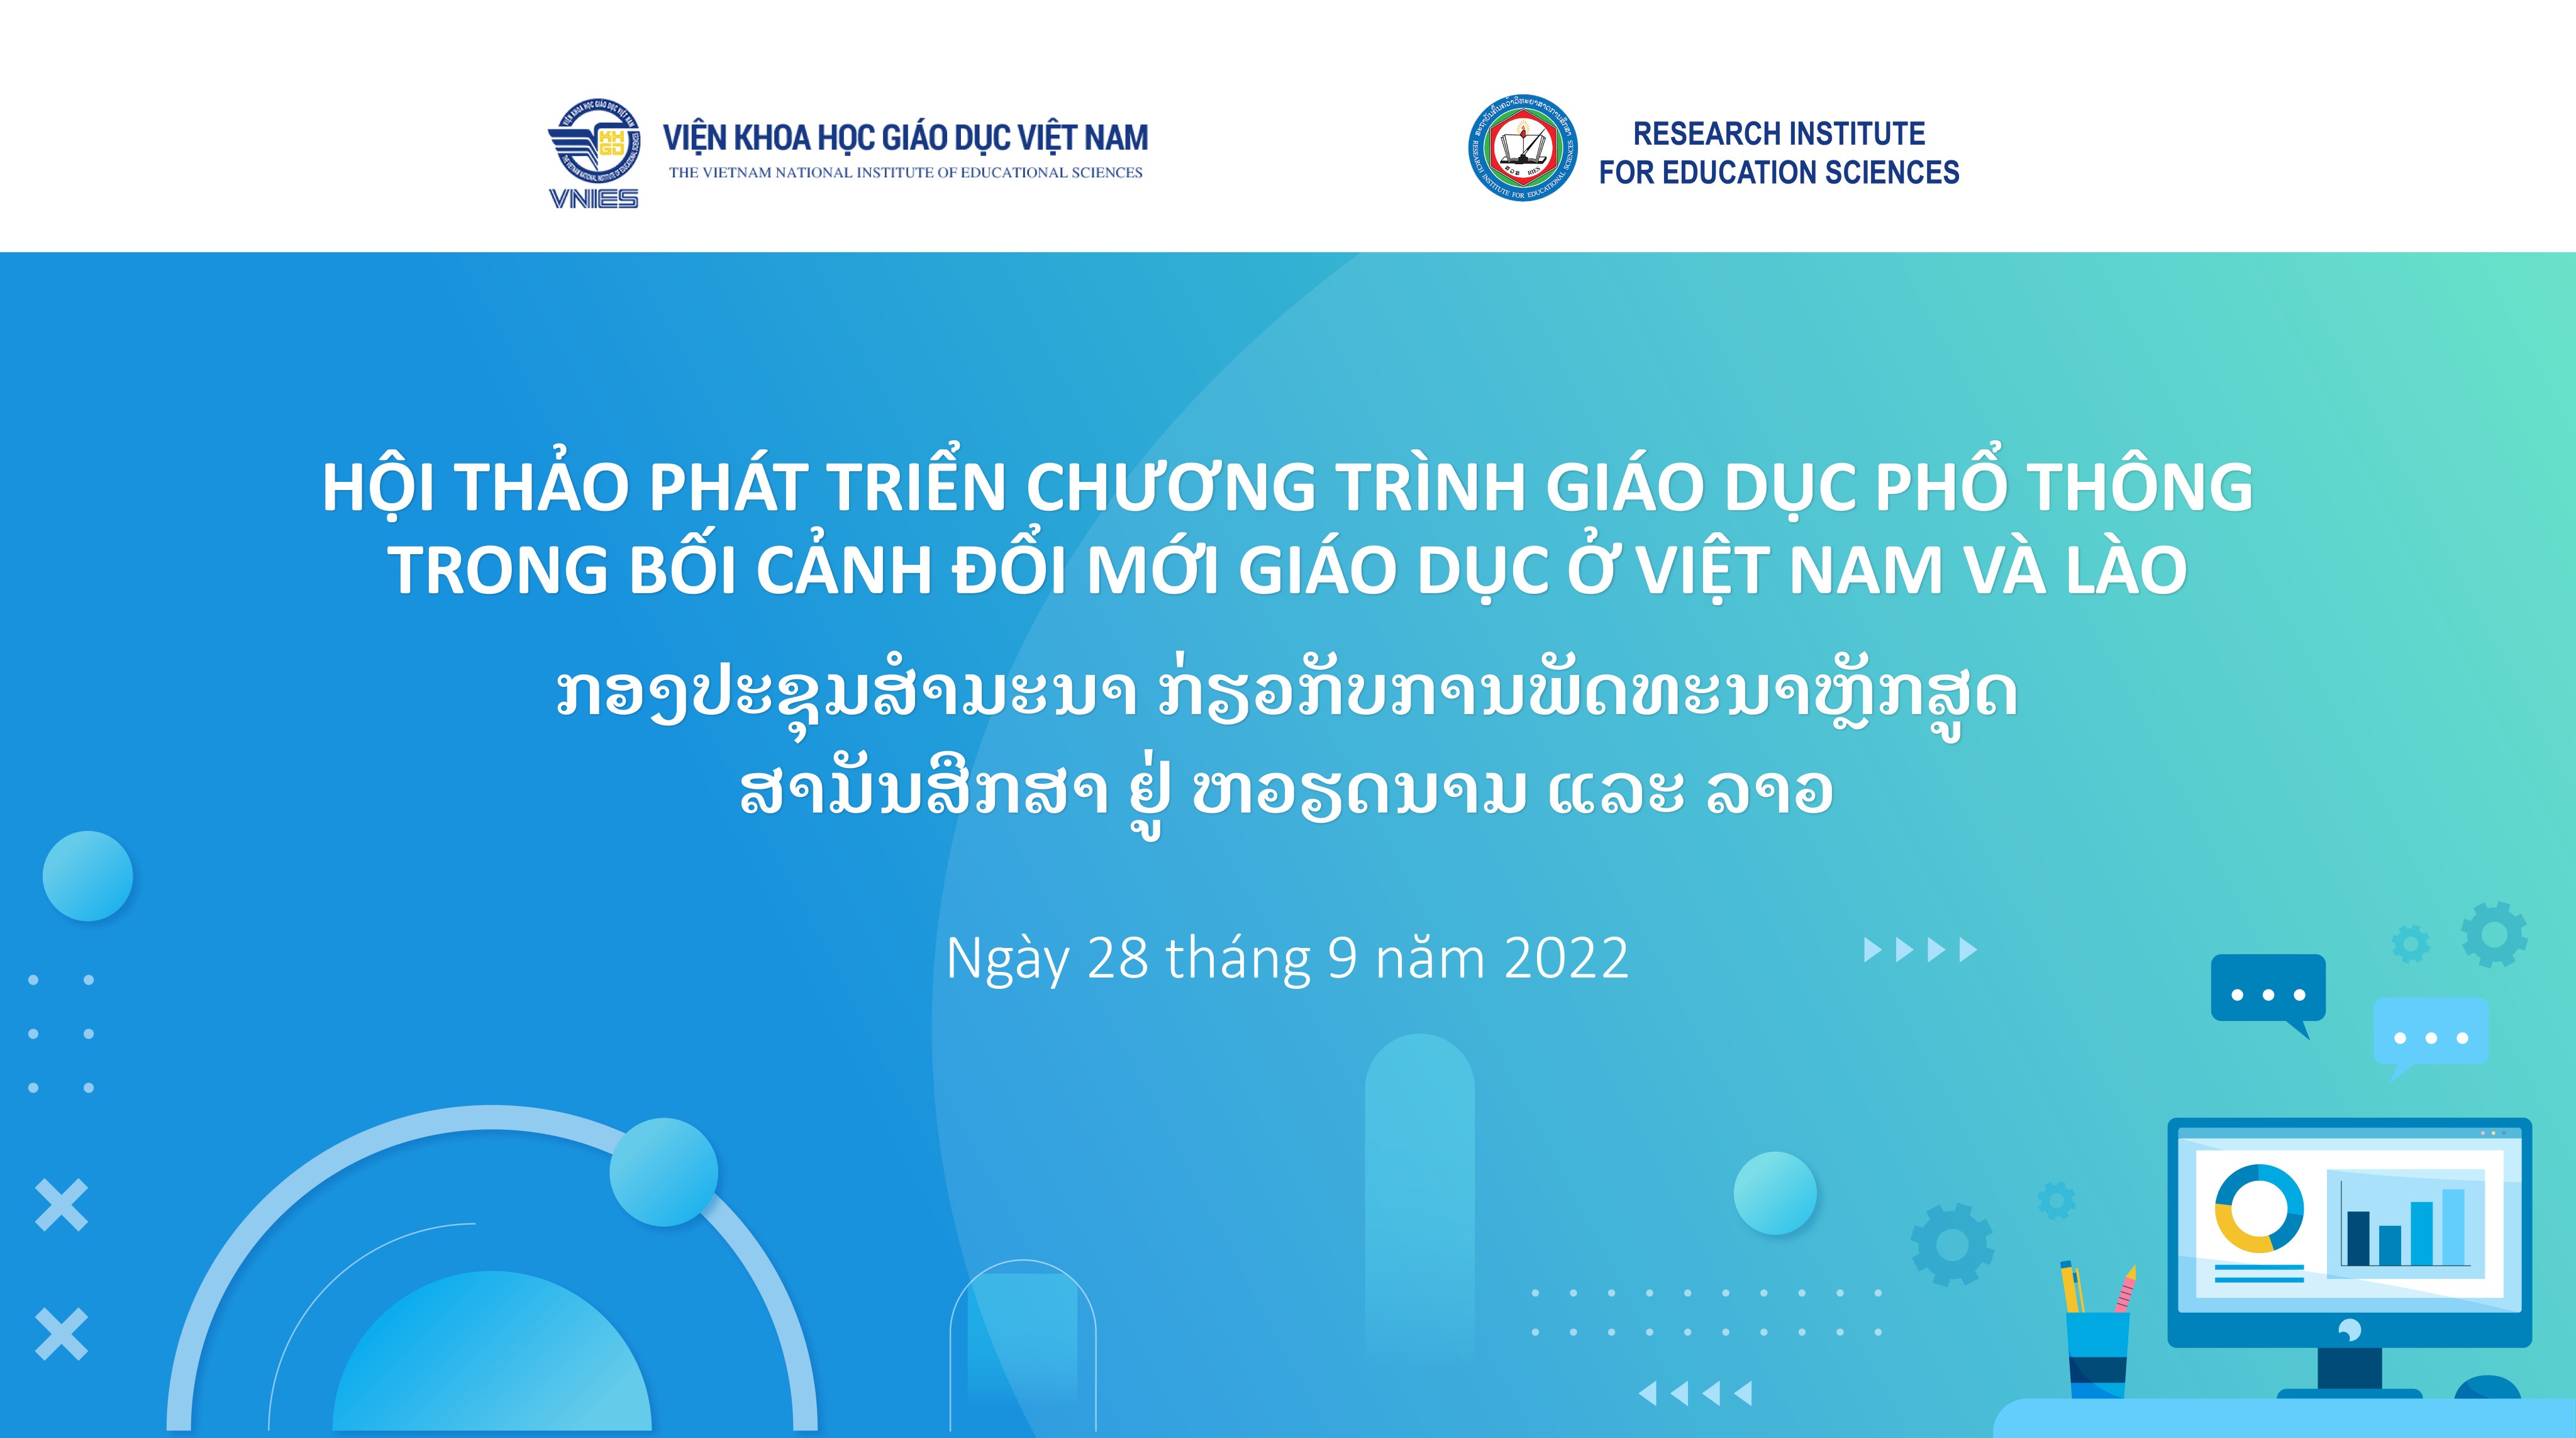 Thông báo Hội thảo Phát triển chương trình giáo dục phổ thông trong bối cảnh đổi mới giáo dục tại Việt Nam và Lào